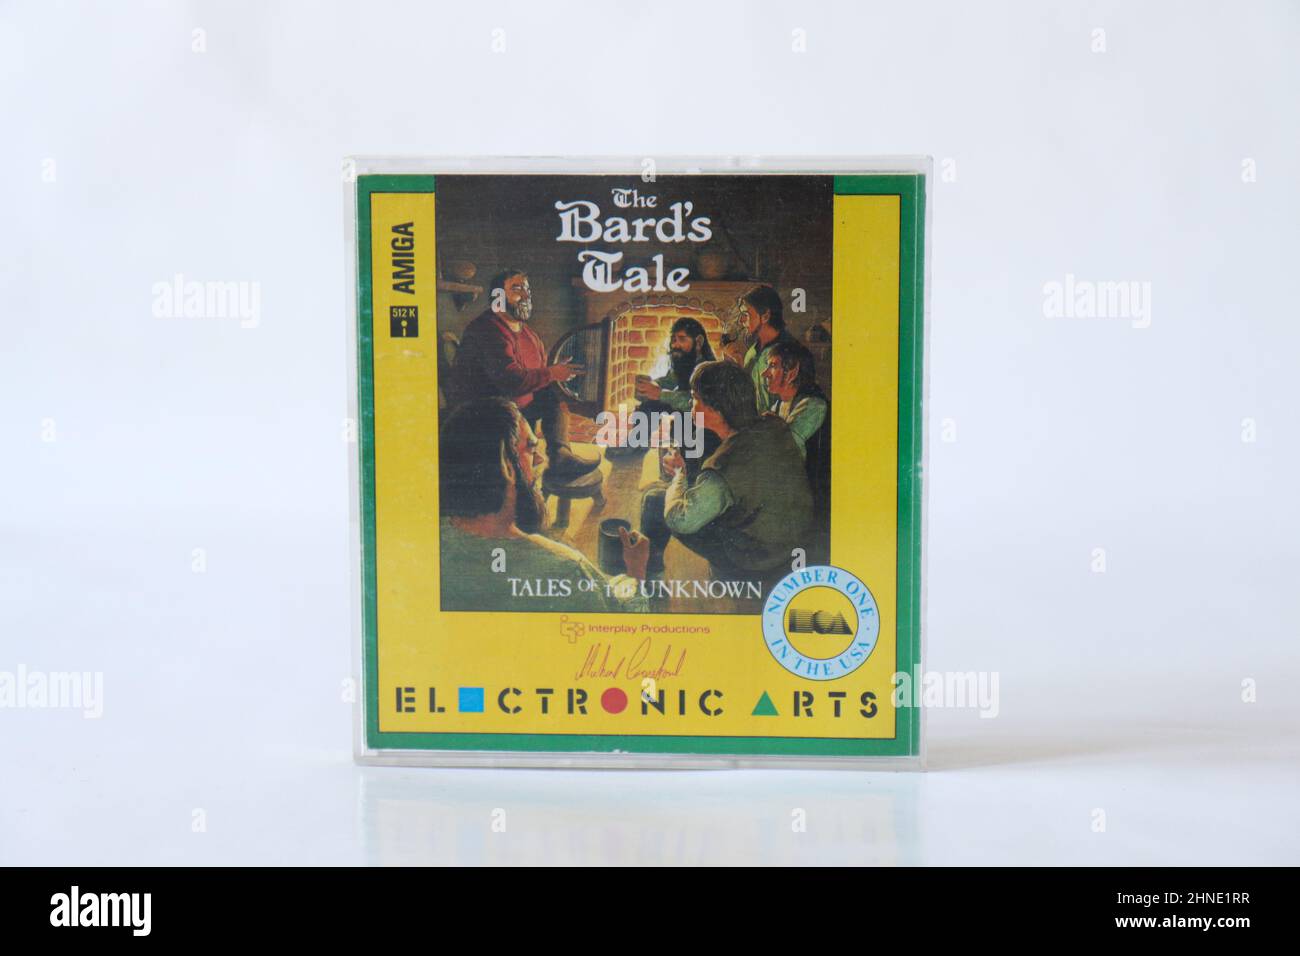 BERLINO - 12 FEBBRAIO 2022: Vintage retro Video Game LA STORIA DI BARD - RACCONTI DELL'IGNOTO per il Commodore Amiga su floppy Disks. Arti elettroniche r Foto Stock